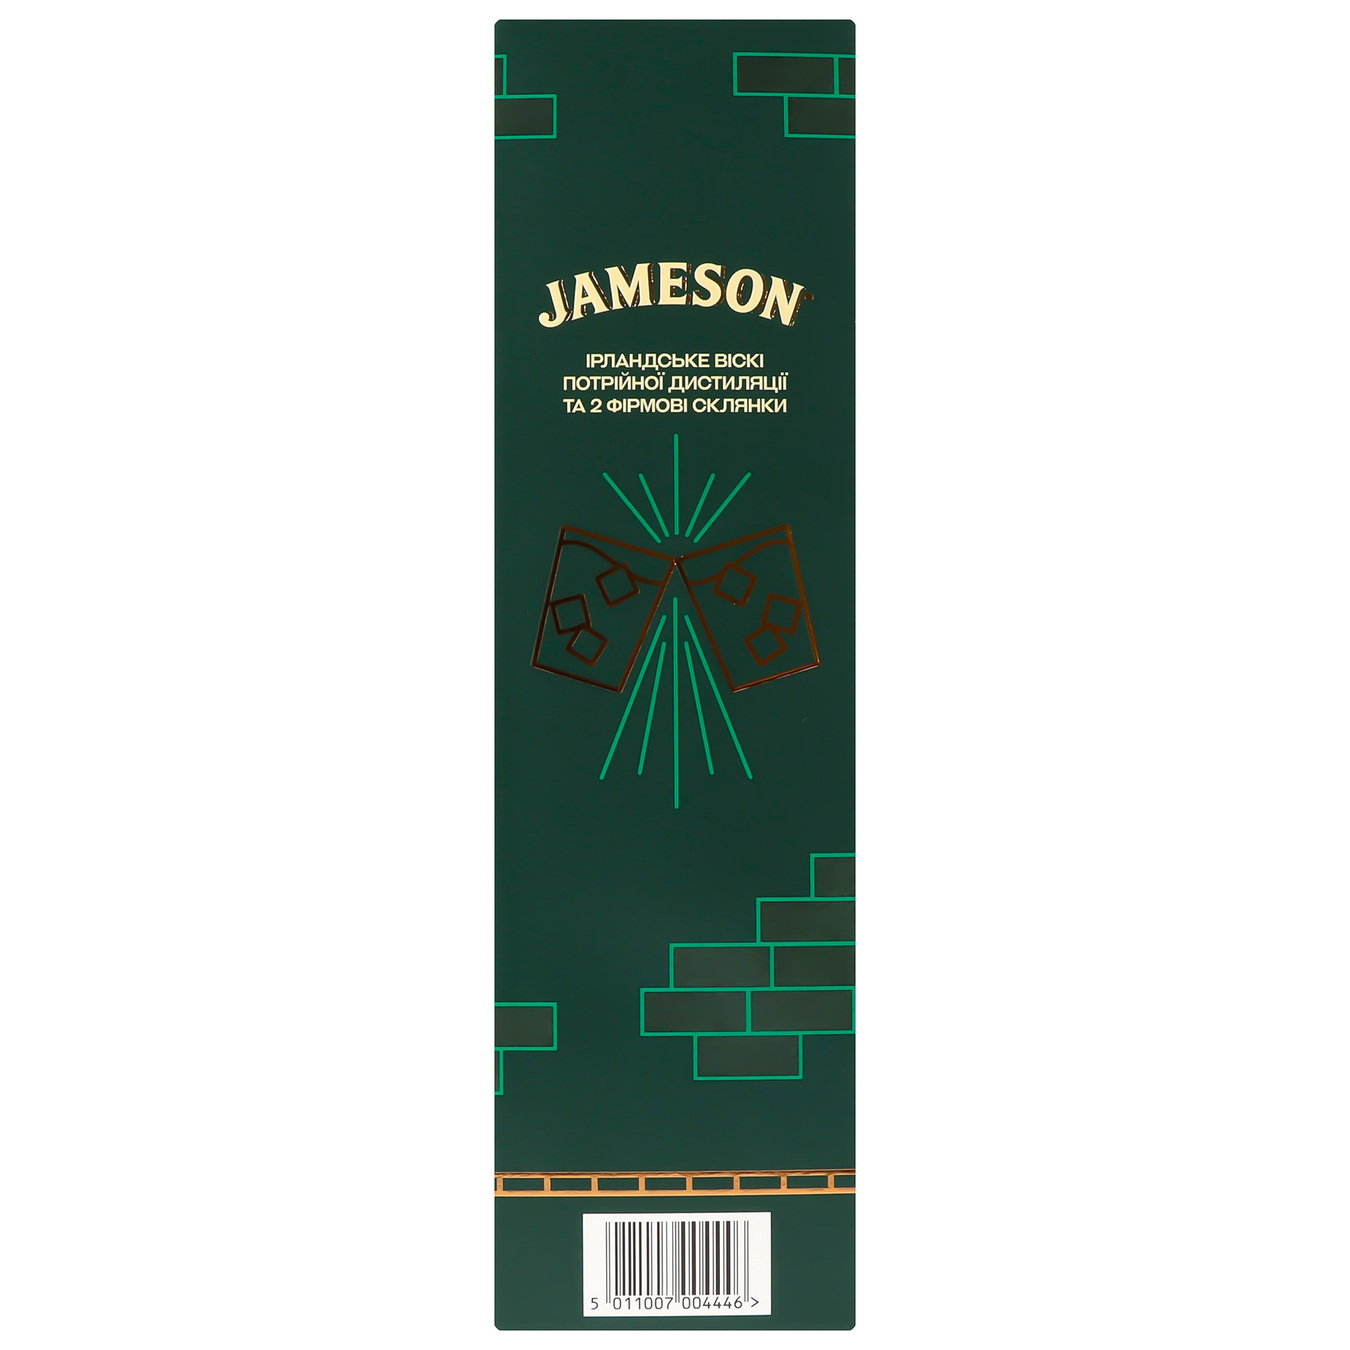 Jameson whiskey 40% 0.7l + 2 glasses 2